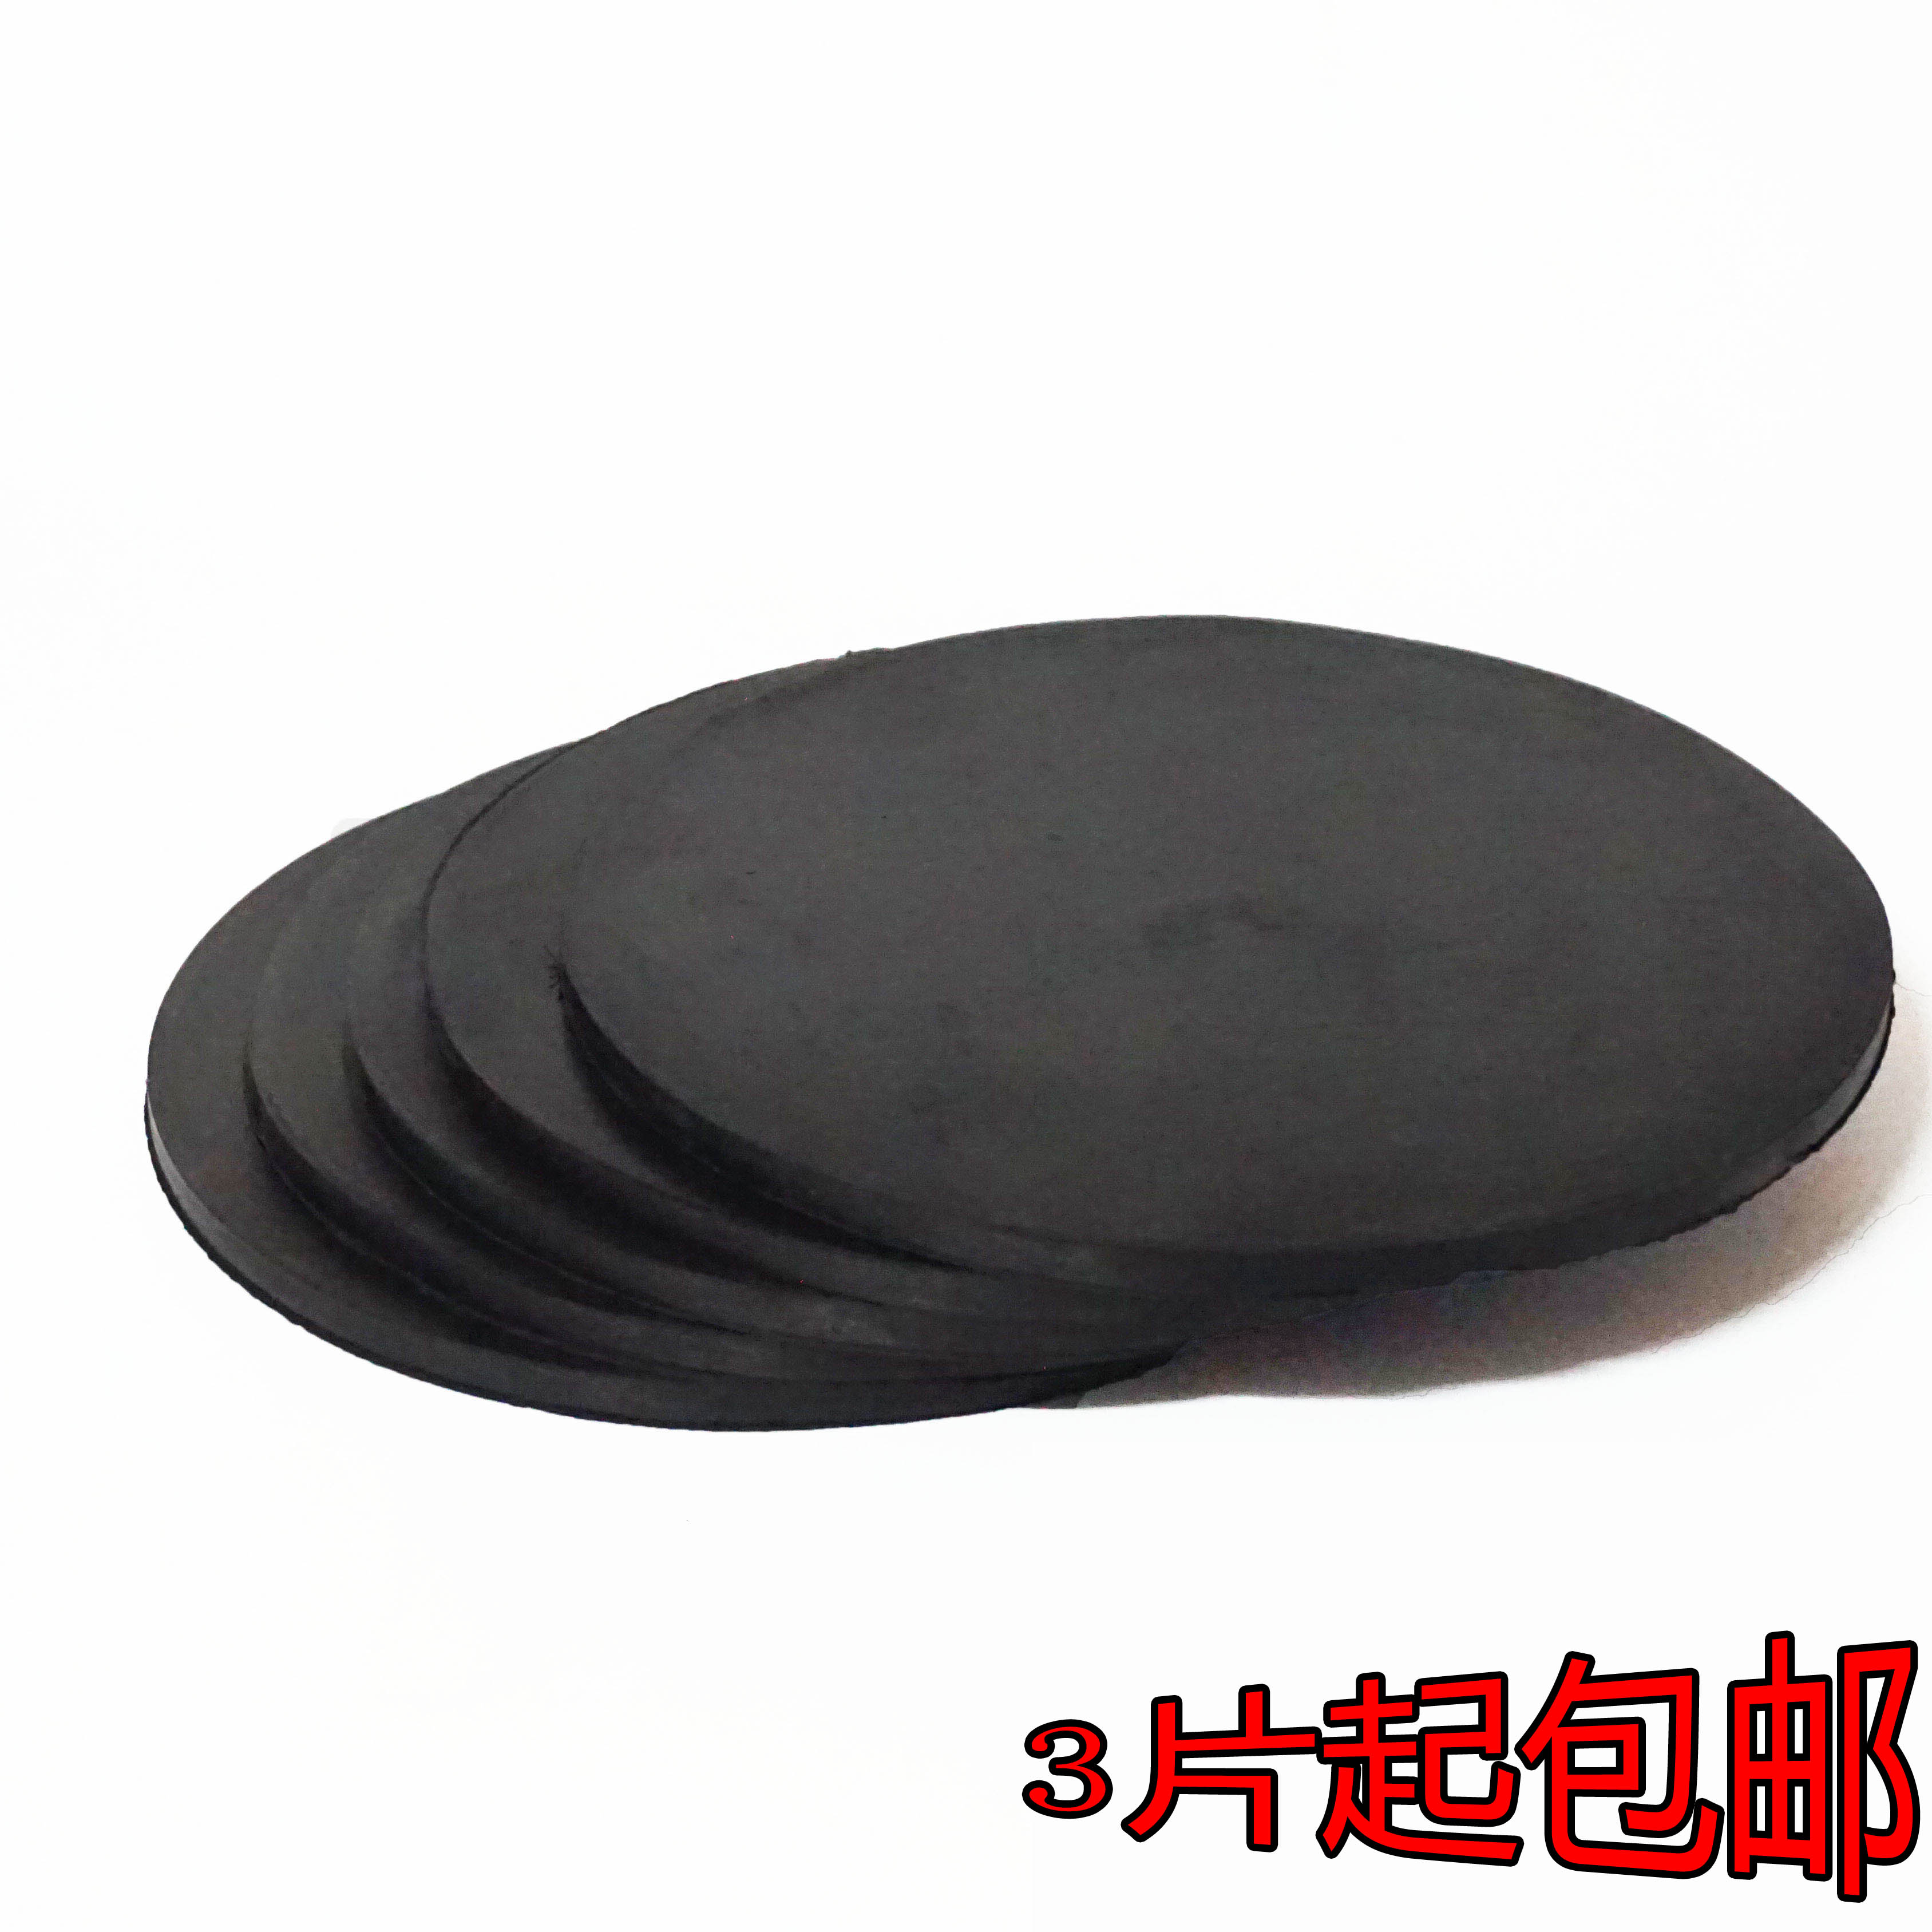 热卖橡胶取样垫片垫板圆盘取样器取样纺织器材黑色直径19cm厚7mm